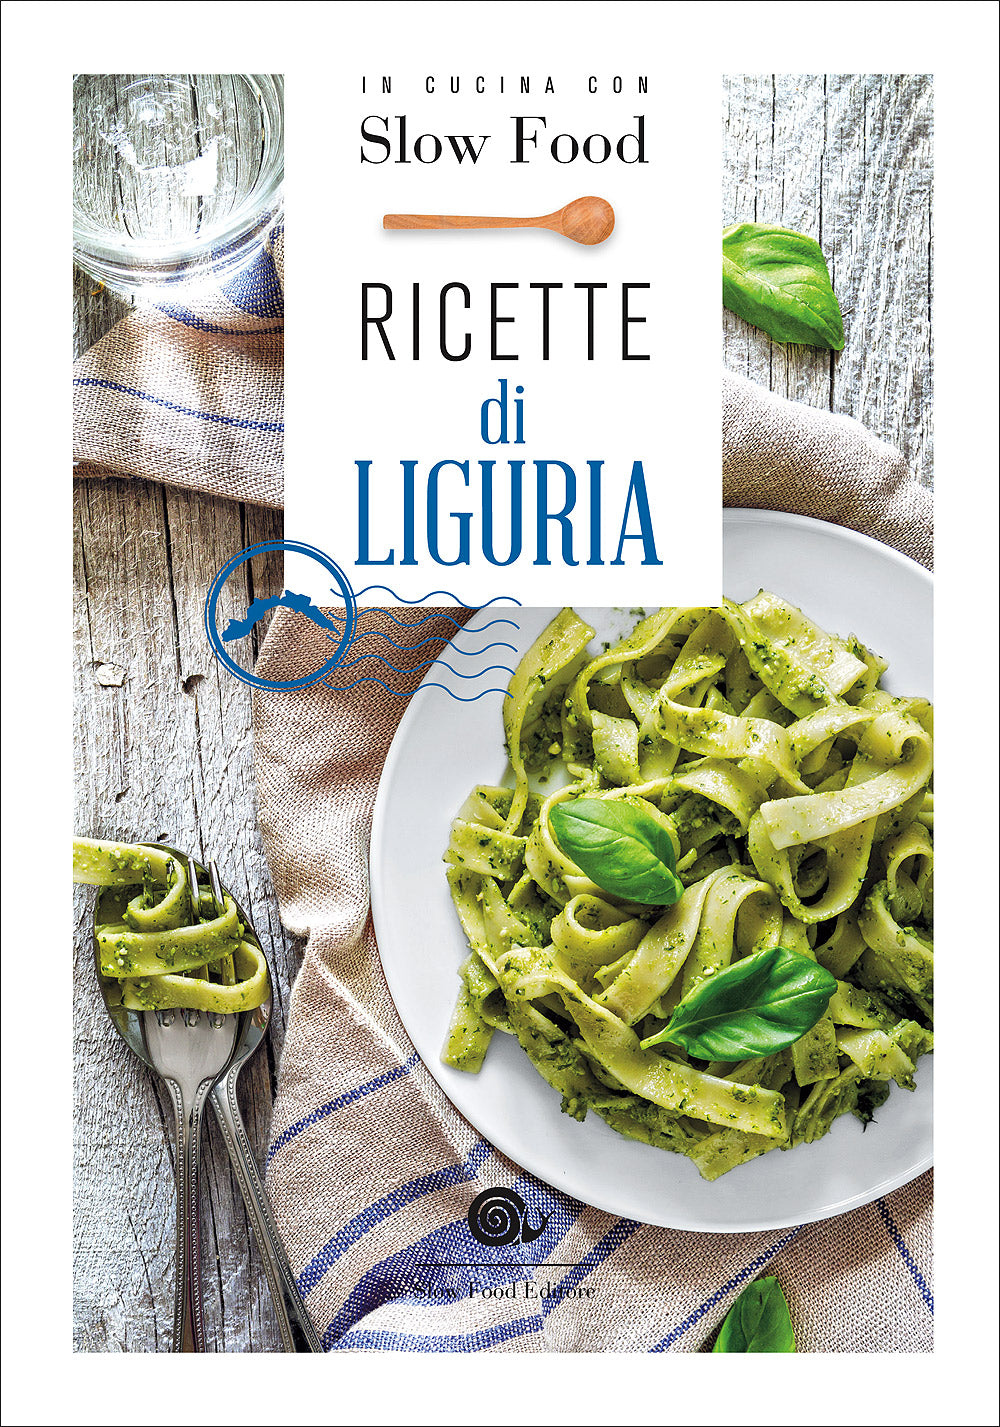 Ricette di Liguria